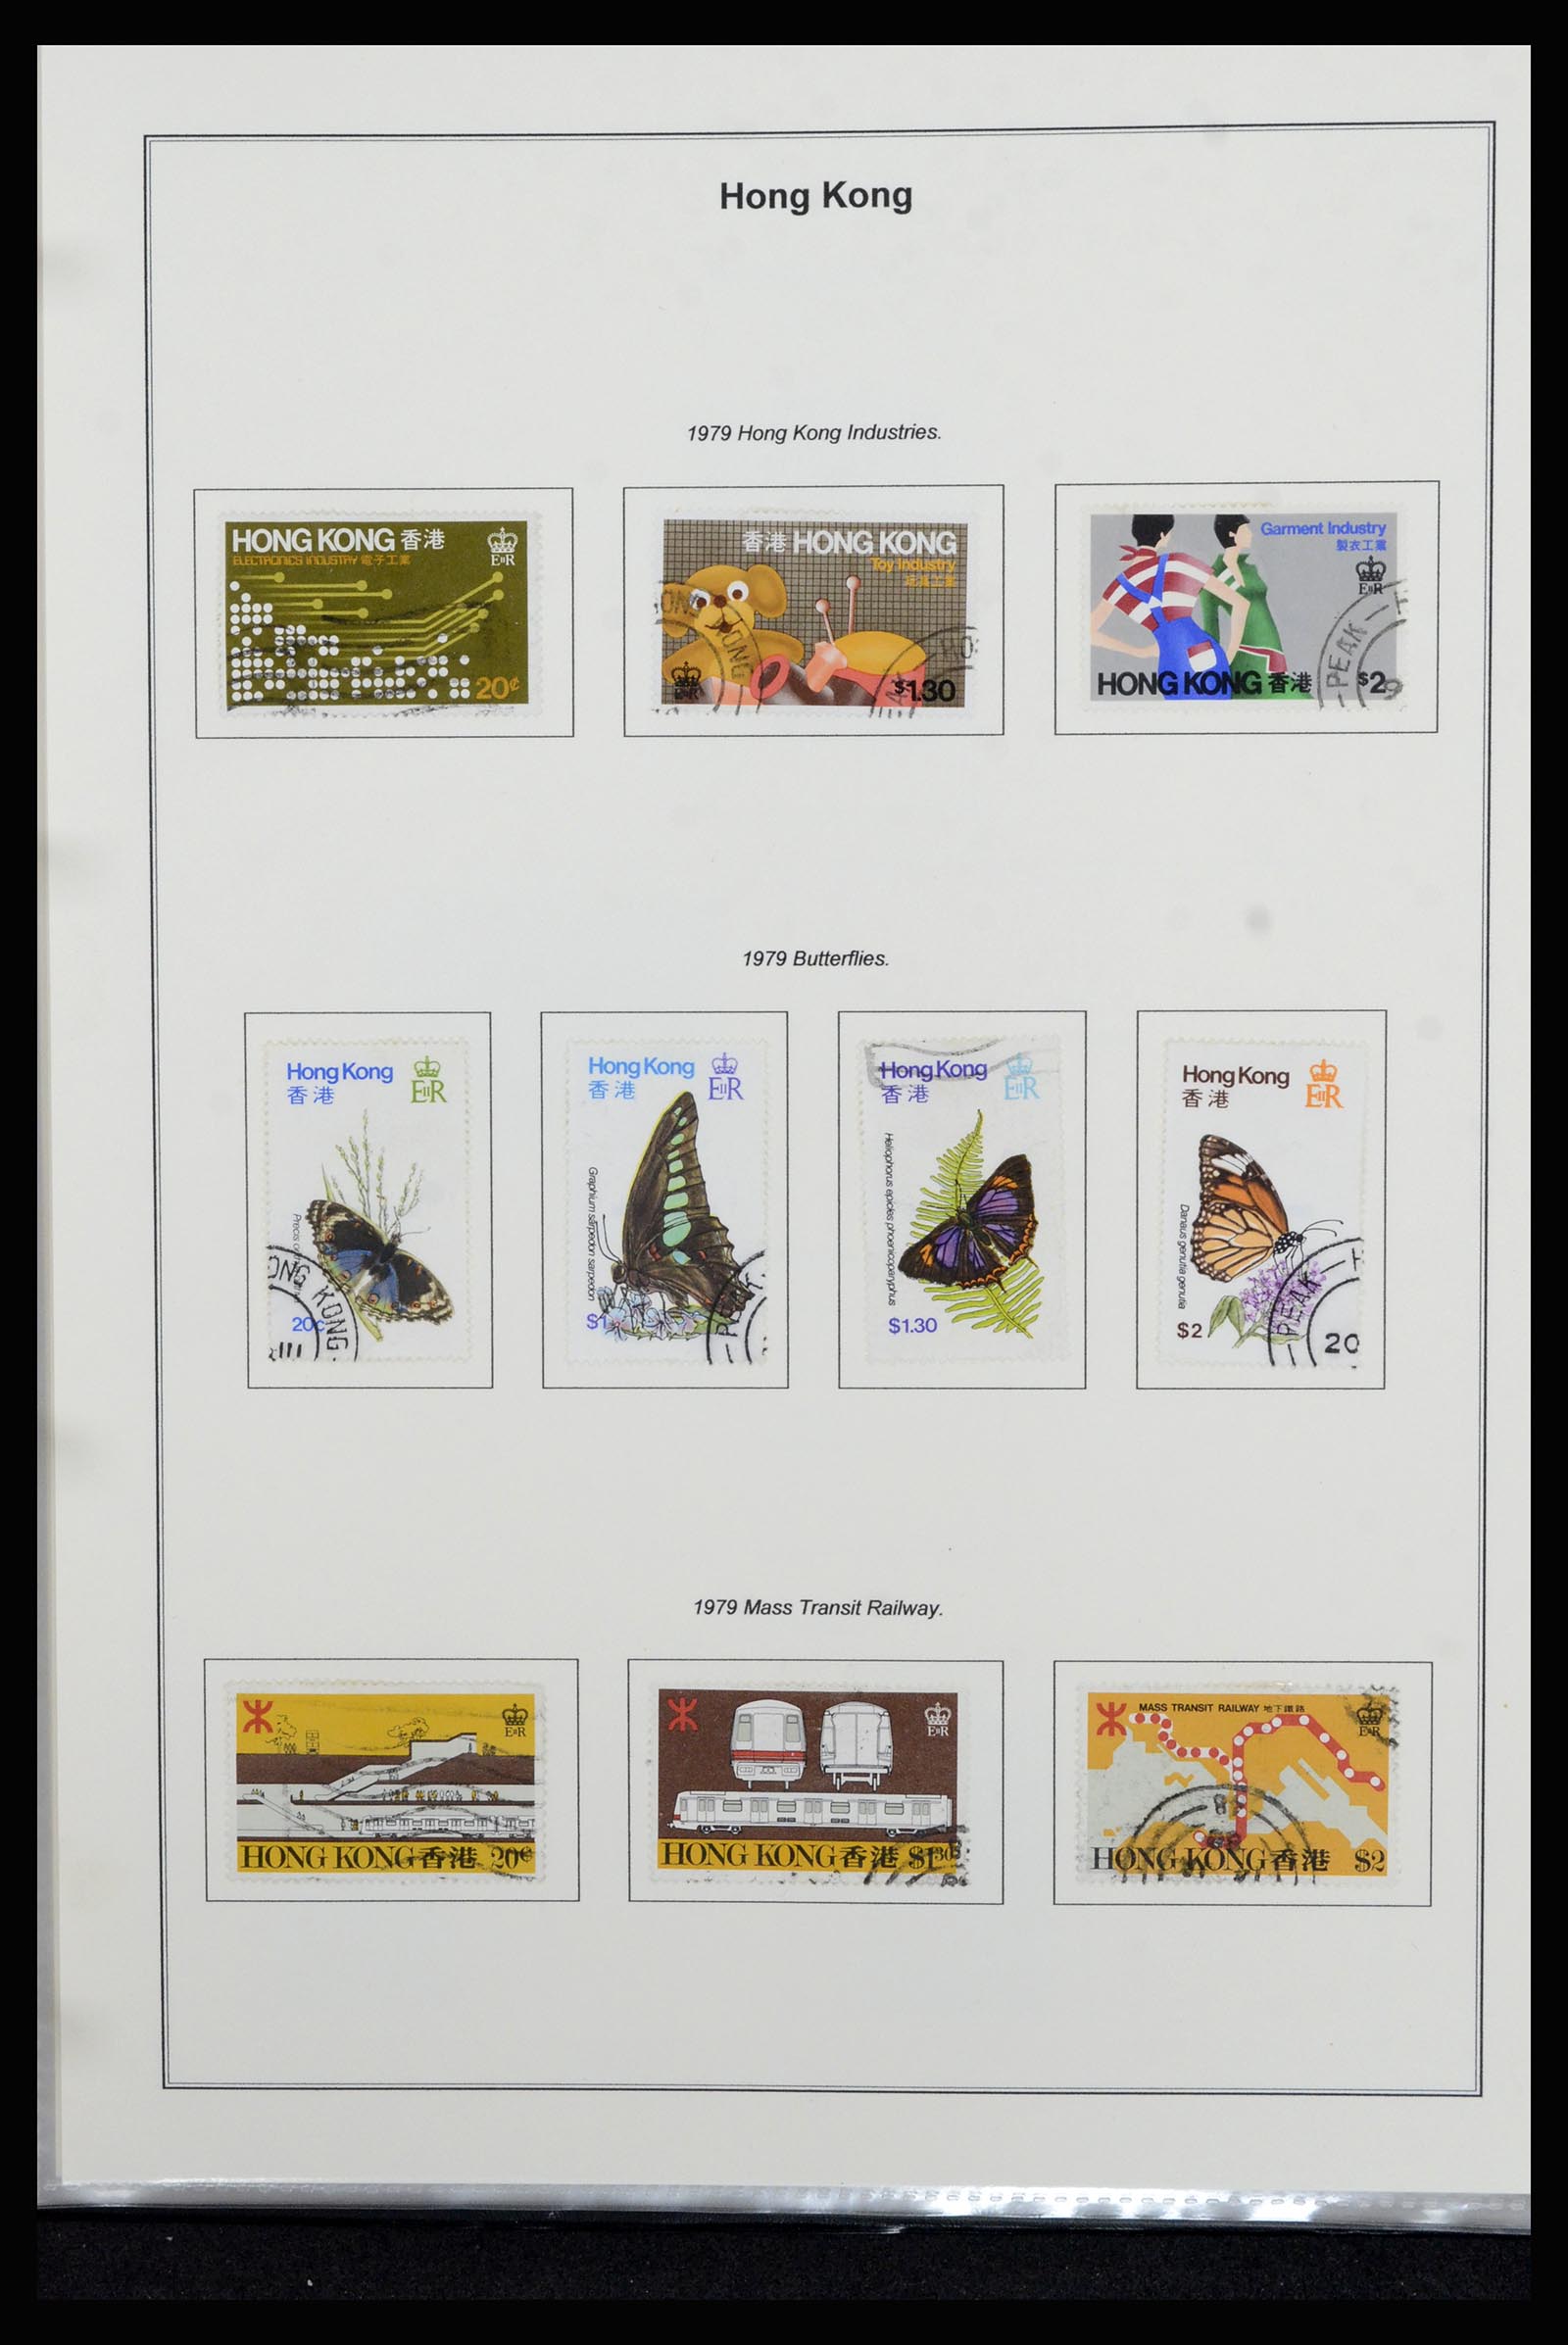 37079 040 - Stamp collection 37079 Hong Kong 1961-1984.